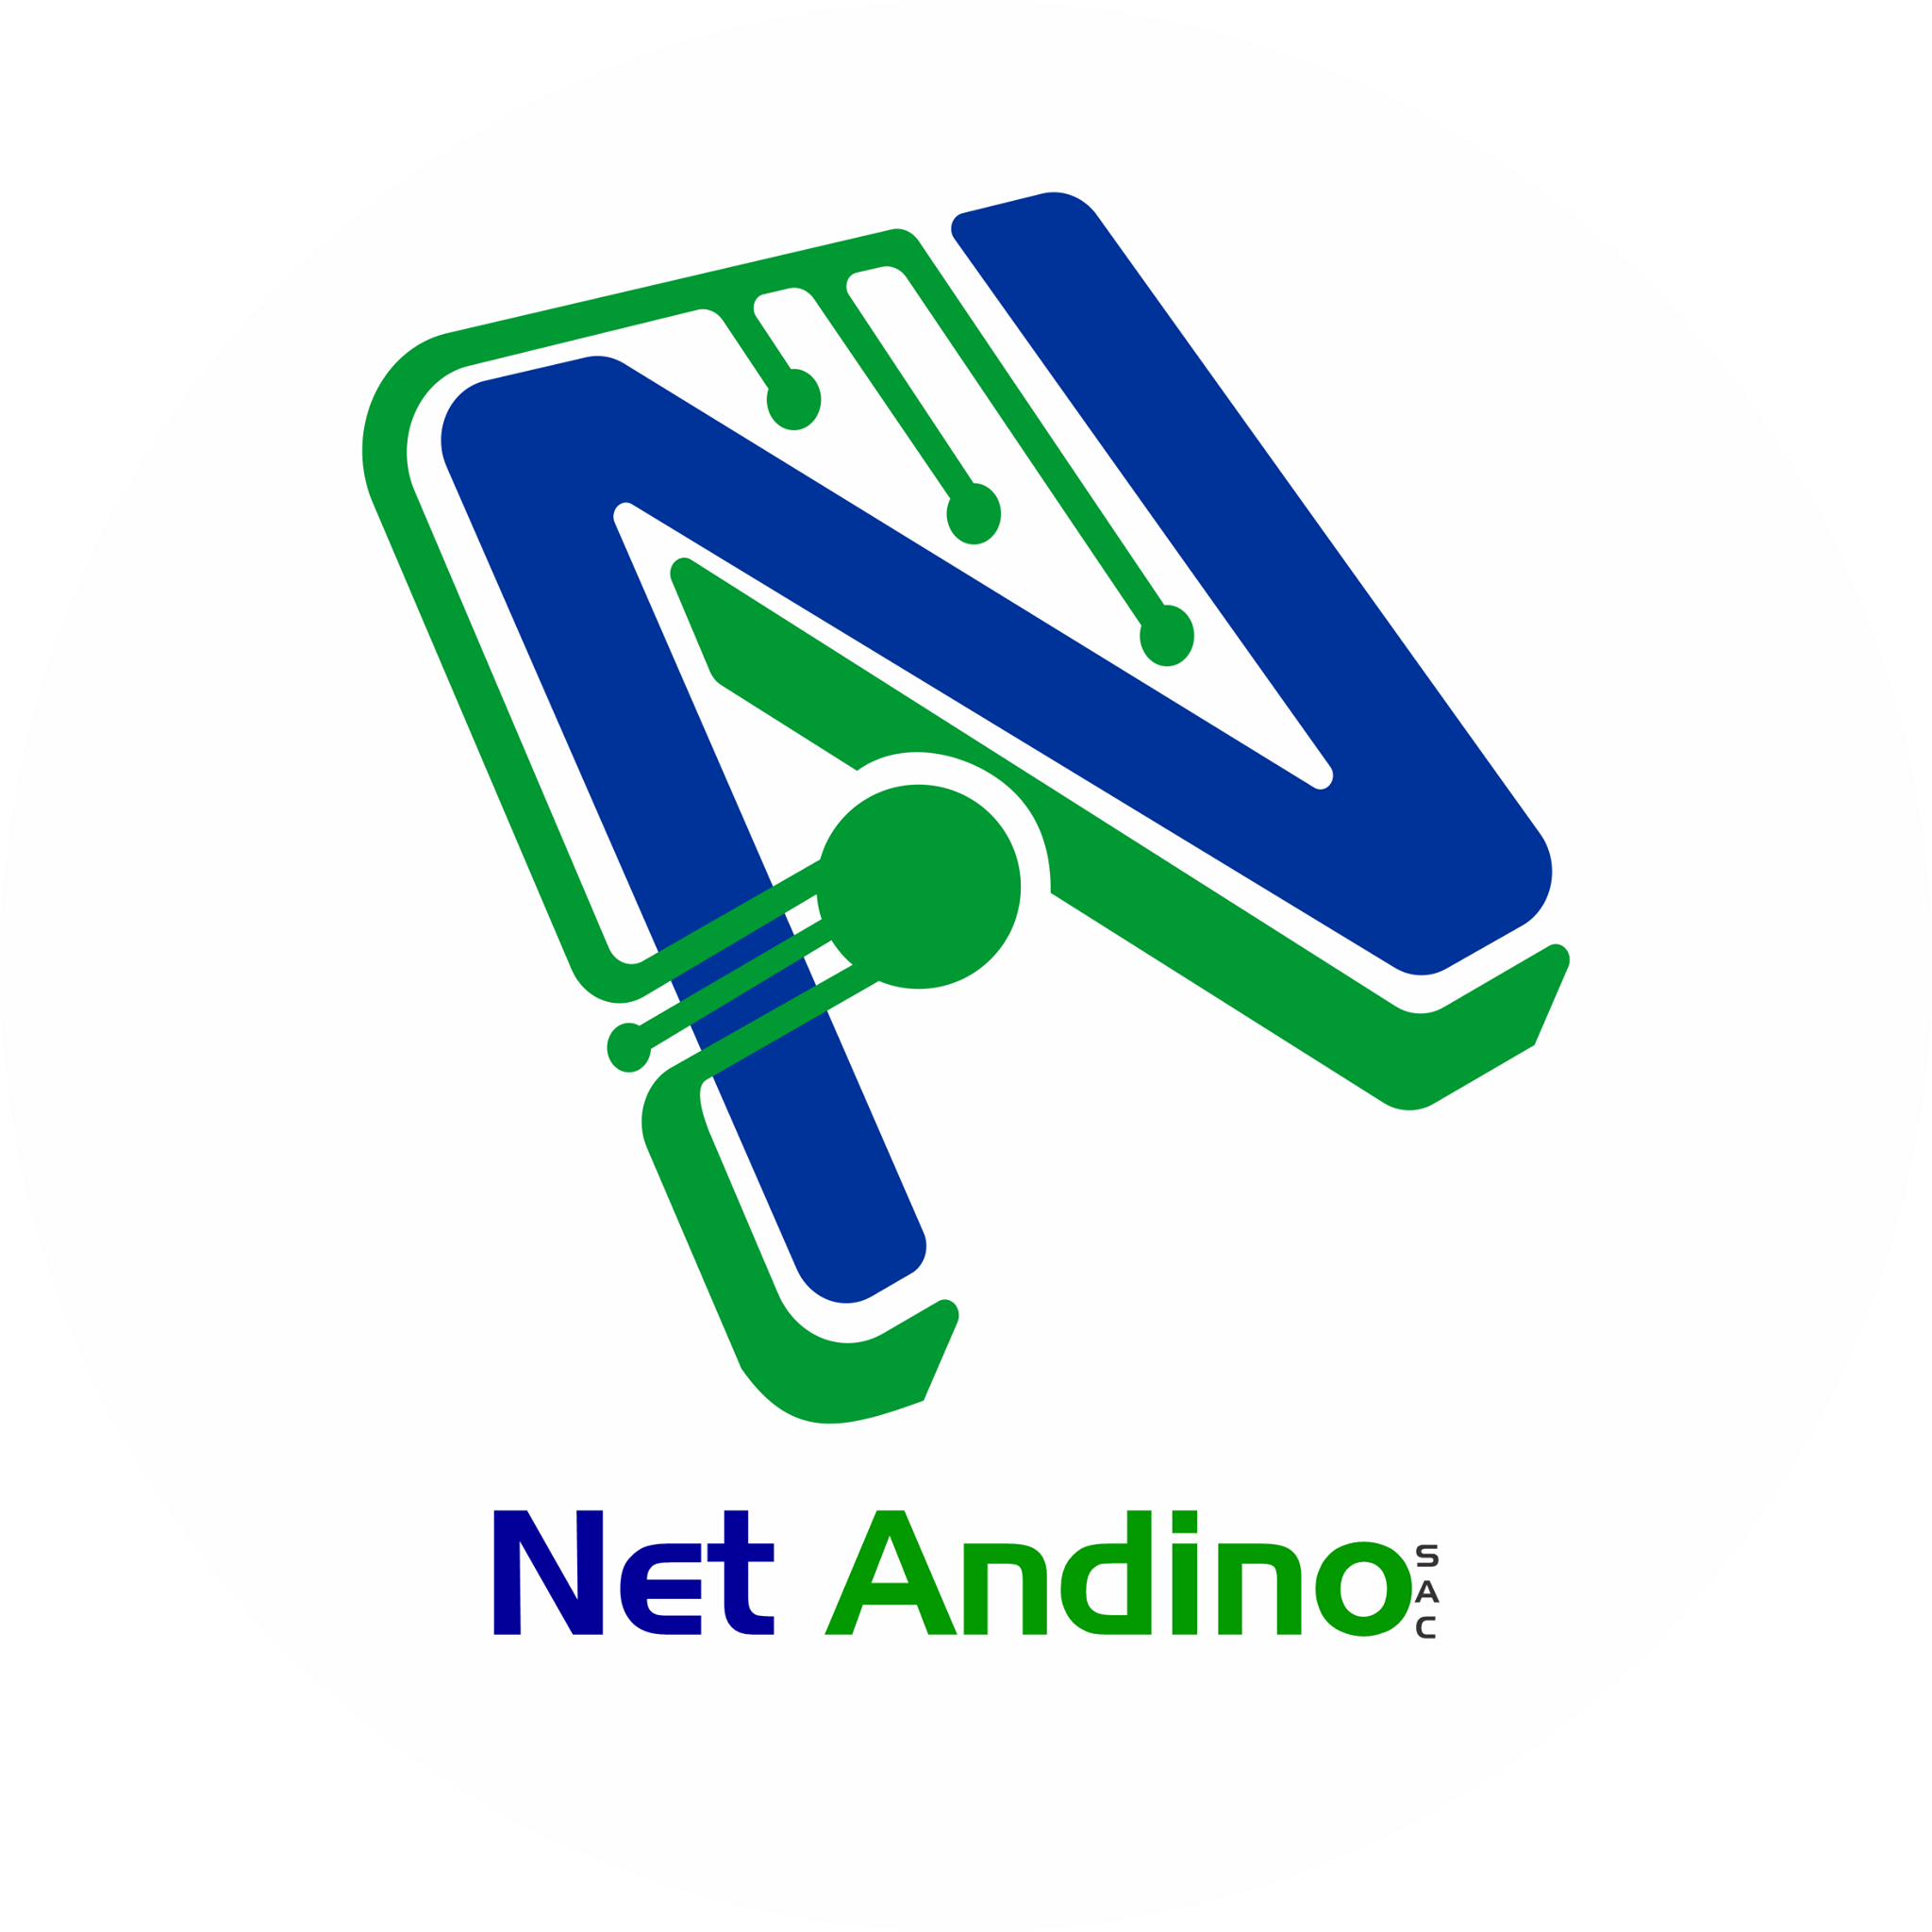 Net Andino